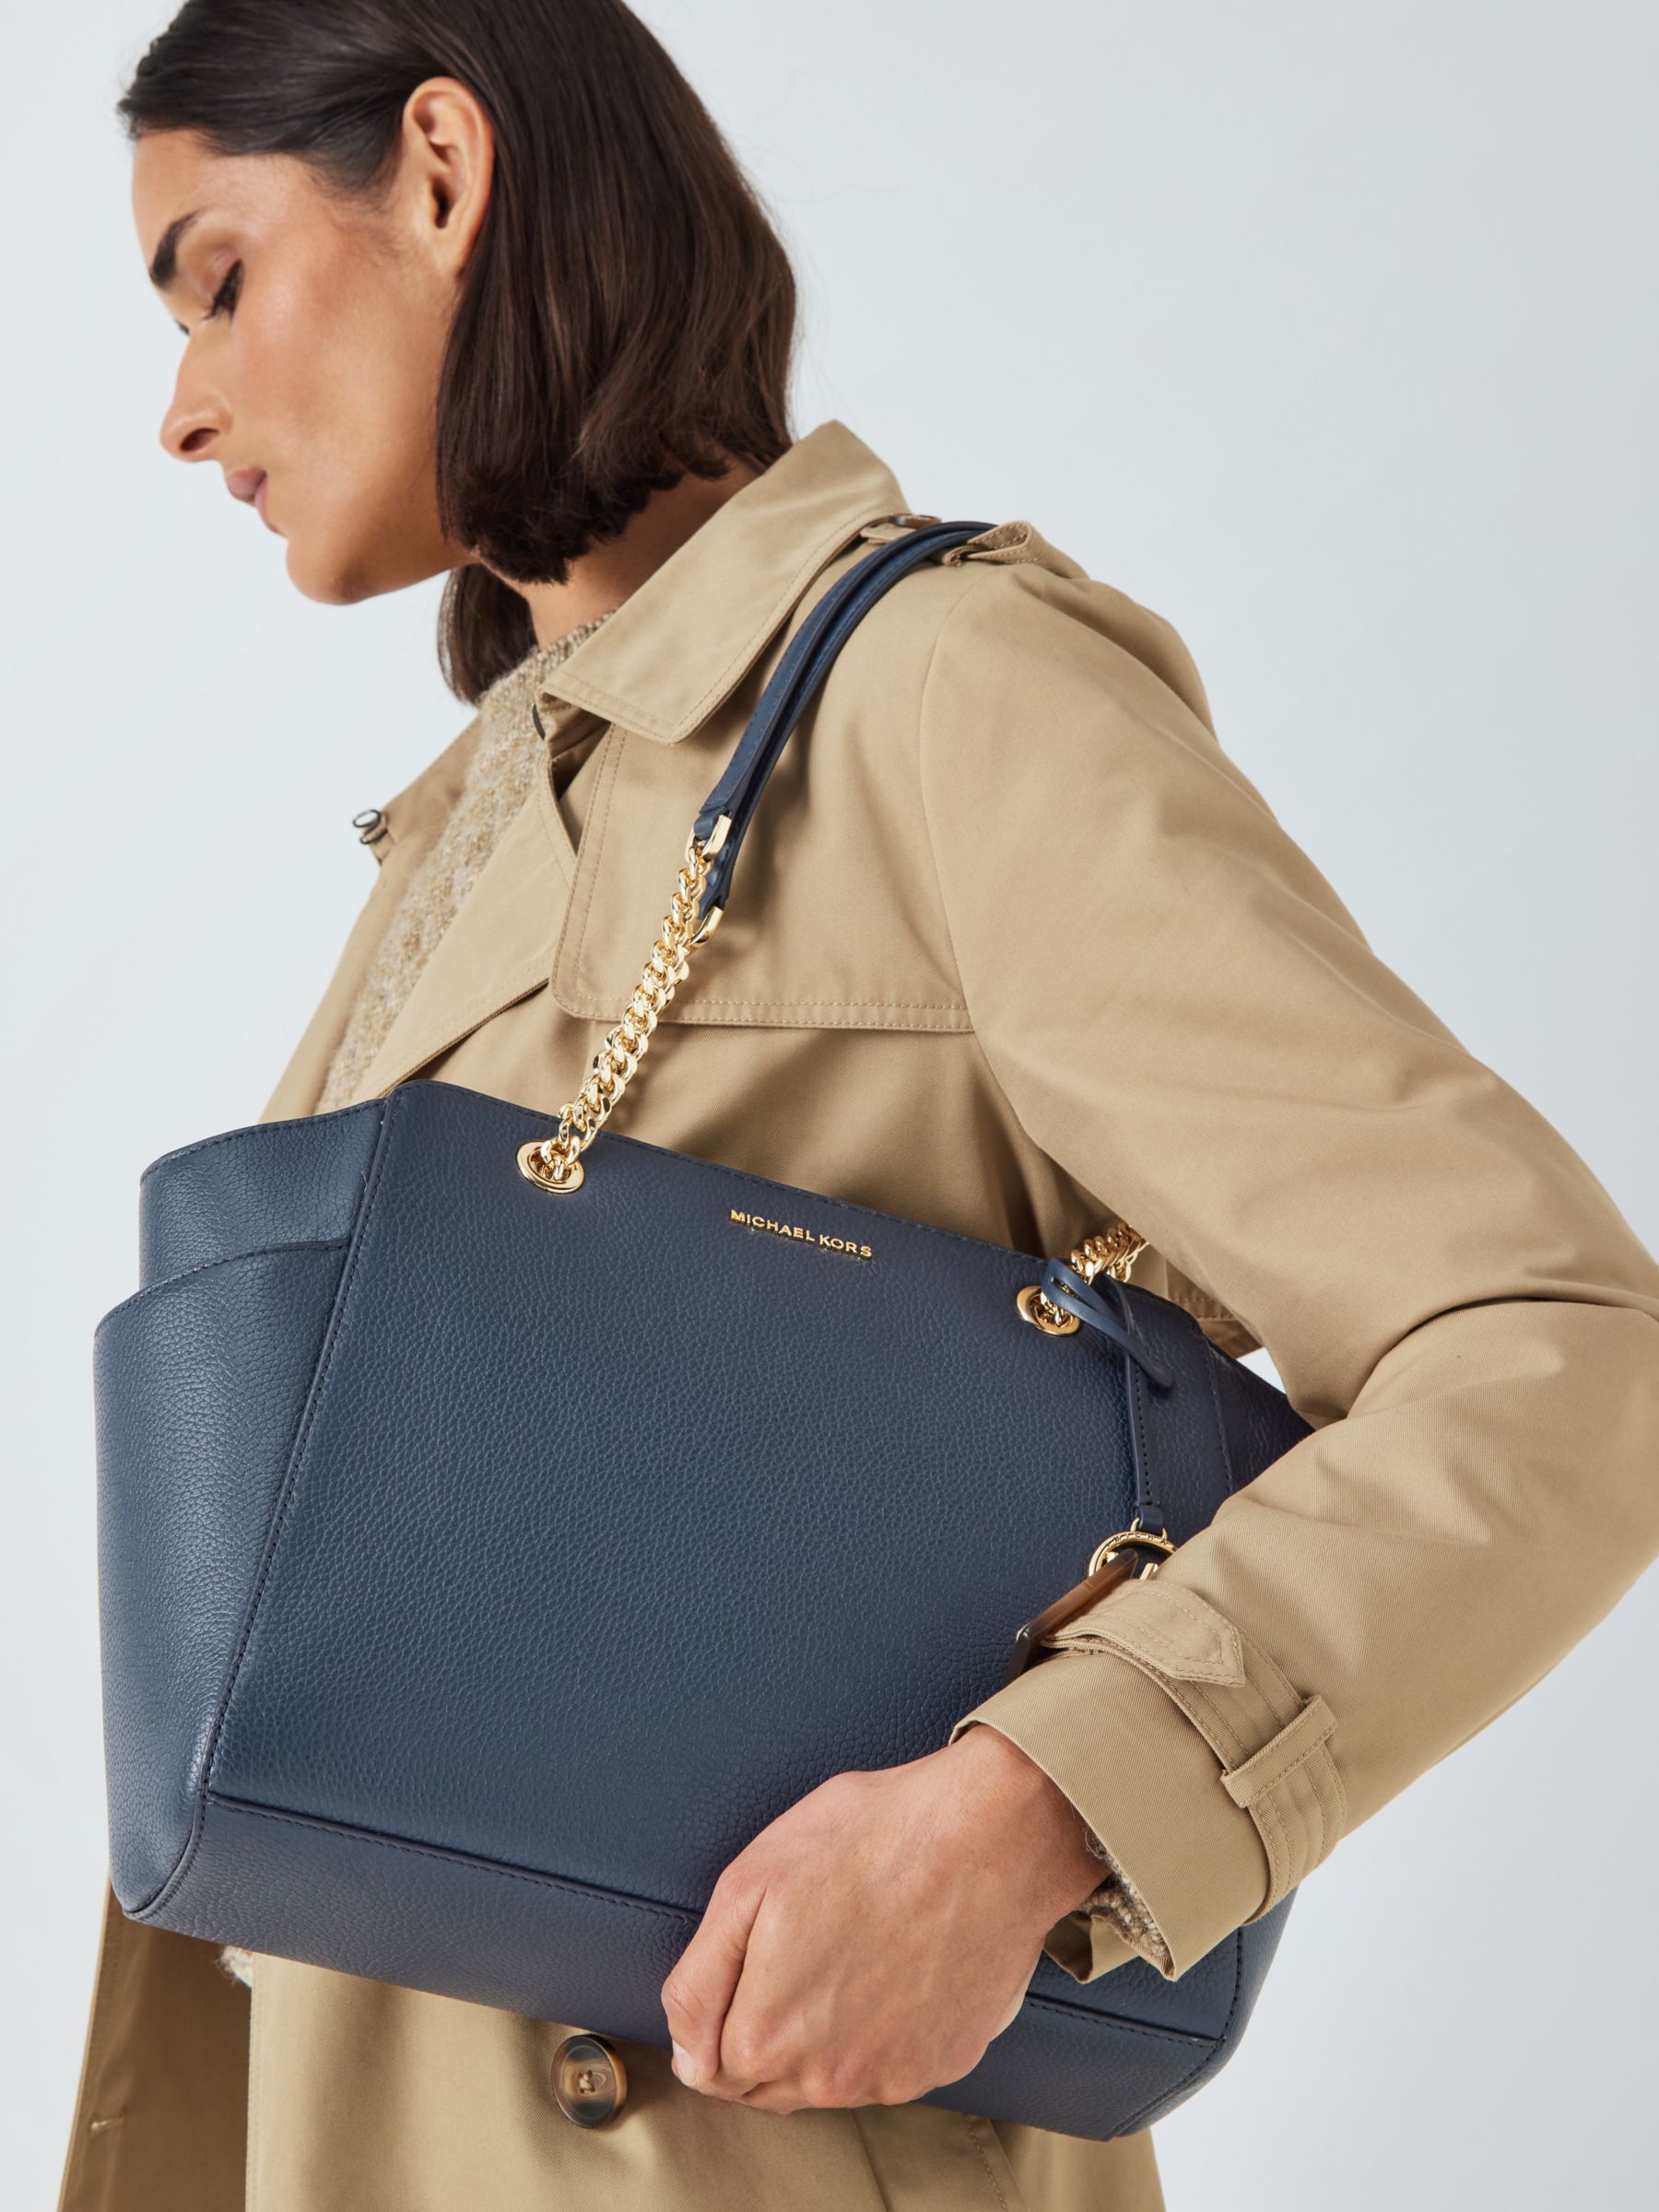 Michael Kors Jacquelyn Leather Shoulder Bag, Navy at John Lewis & Partners